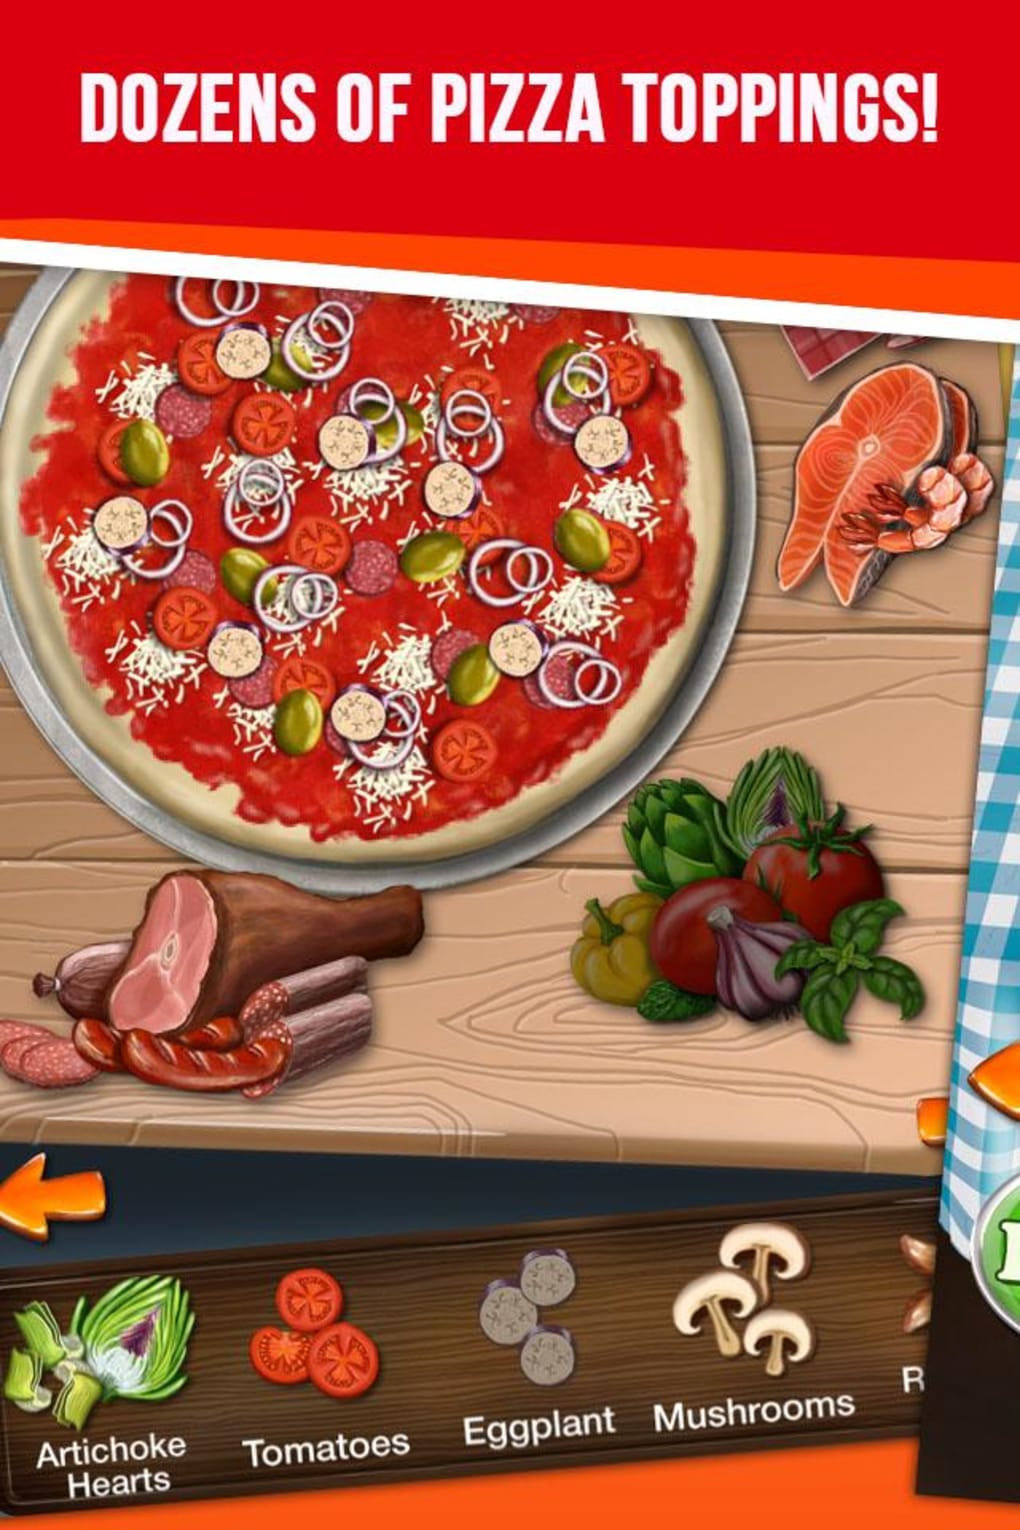 хорошая пицца игра скачать бесплатно на андроид фото 54